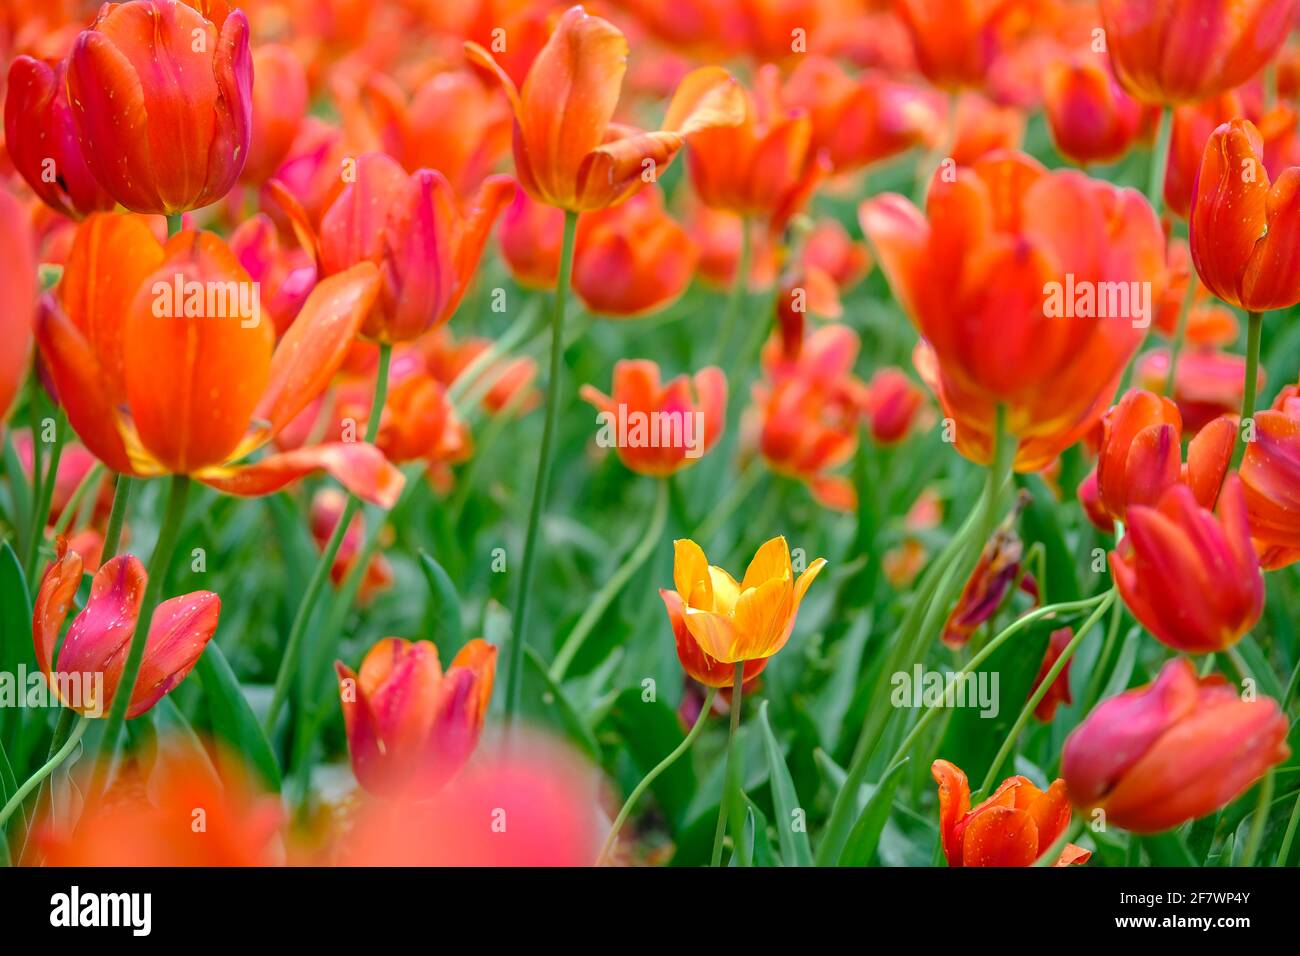 30.04.2020, Essen, Ruhrgebiet, Nordrhein-Westfalen, Deutschland - bluehende Tulpen im Gruga-Park in Essen Stock Photo